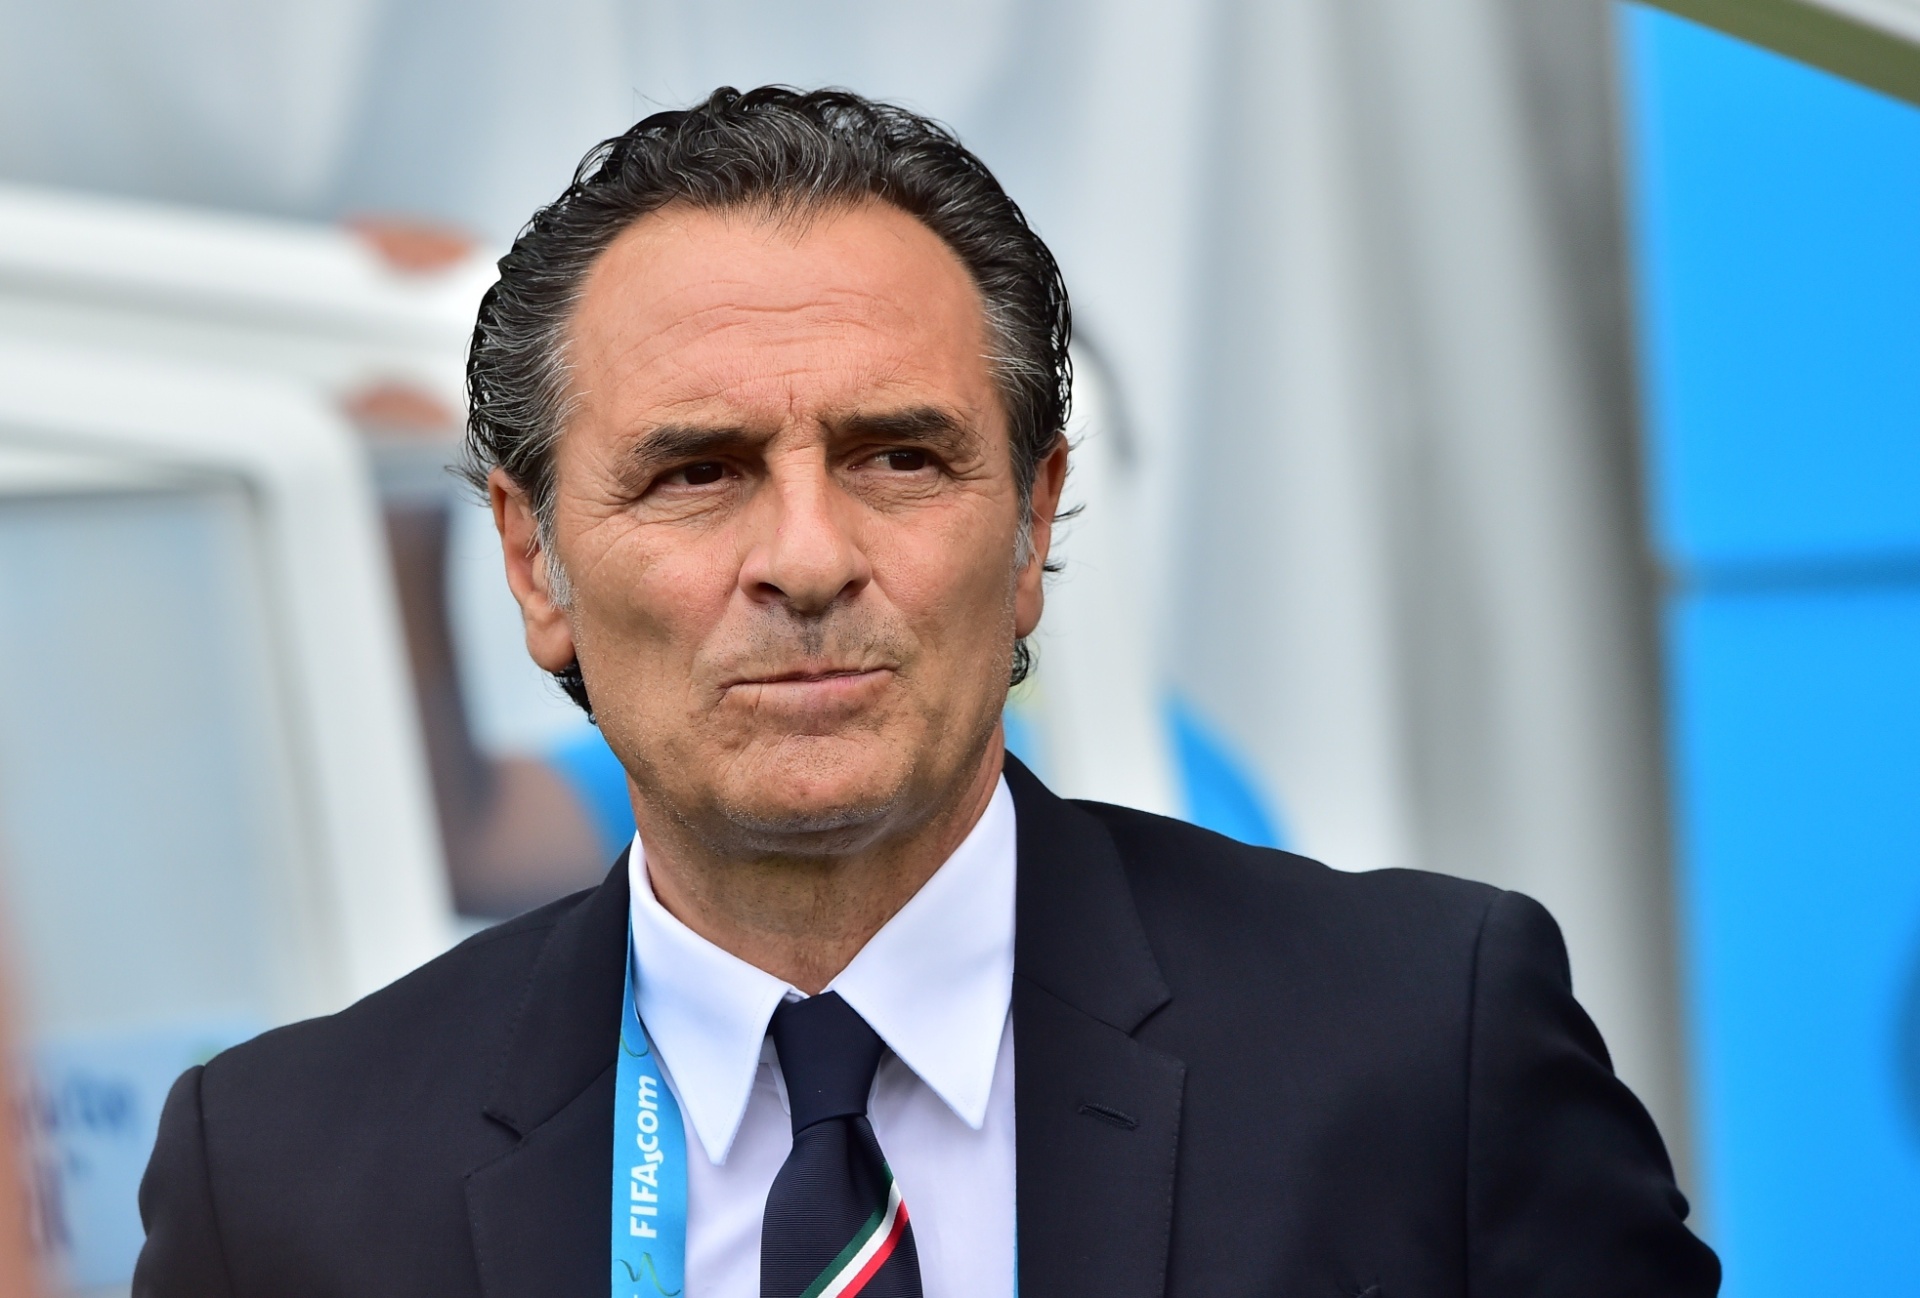 Cesare Prandelli (Itália) - 64 anos - Último trabalho: Fiorentina - Desempregado desde março de 2021 - Foi treinador da seleção italiana após a Copa do Mundo de 2010 e levou a equipe à final da Eurocopa de 2012. Amargou uma desclassificação da Itália na fase de grupos da Copa do Mundo de 2014.